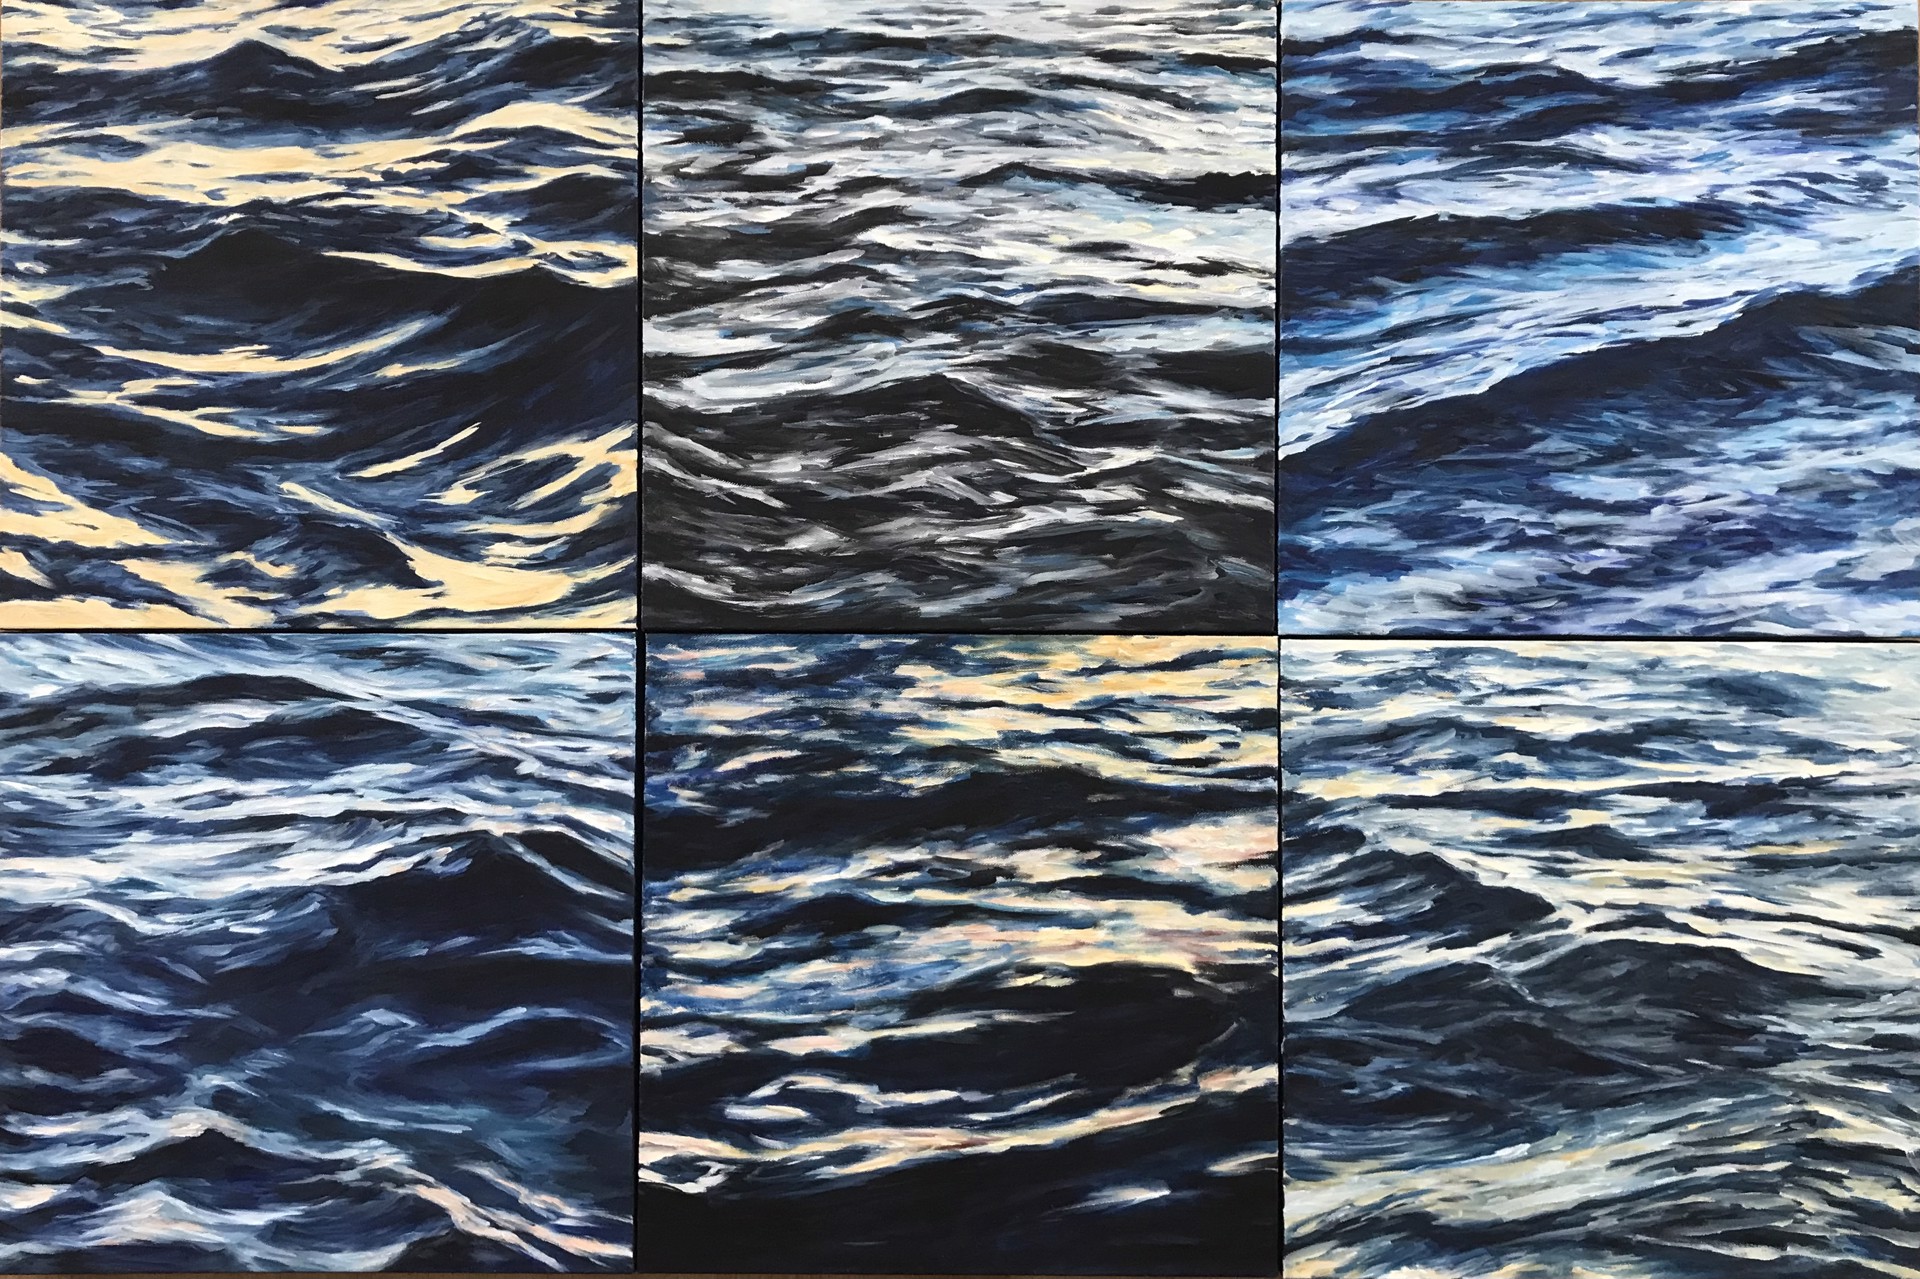 Lahaina Waves 8 by Valerie Eickmeier